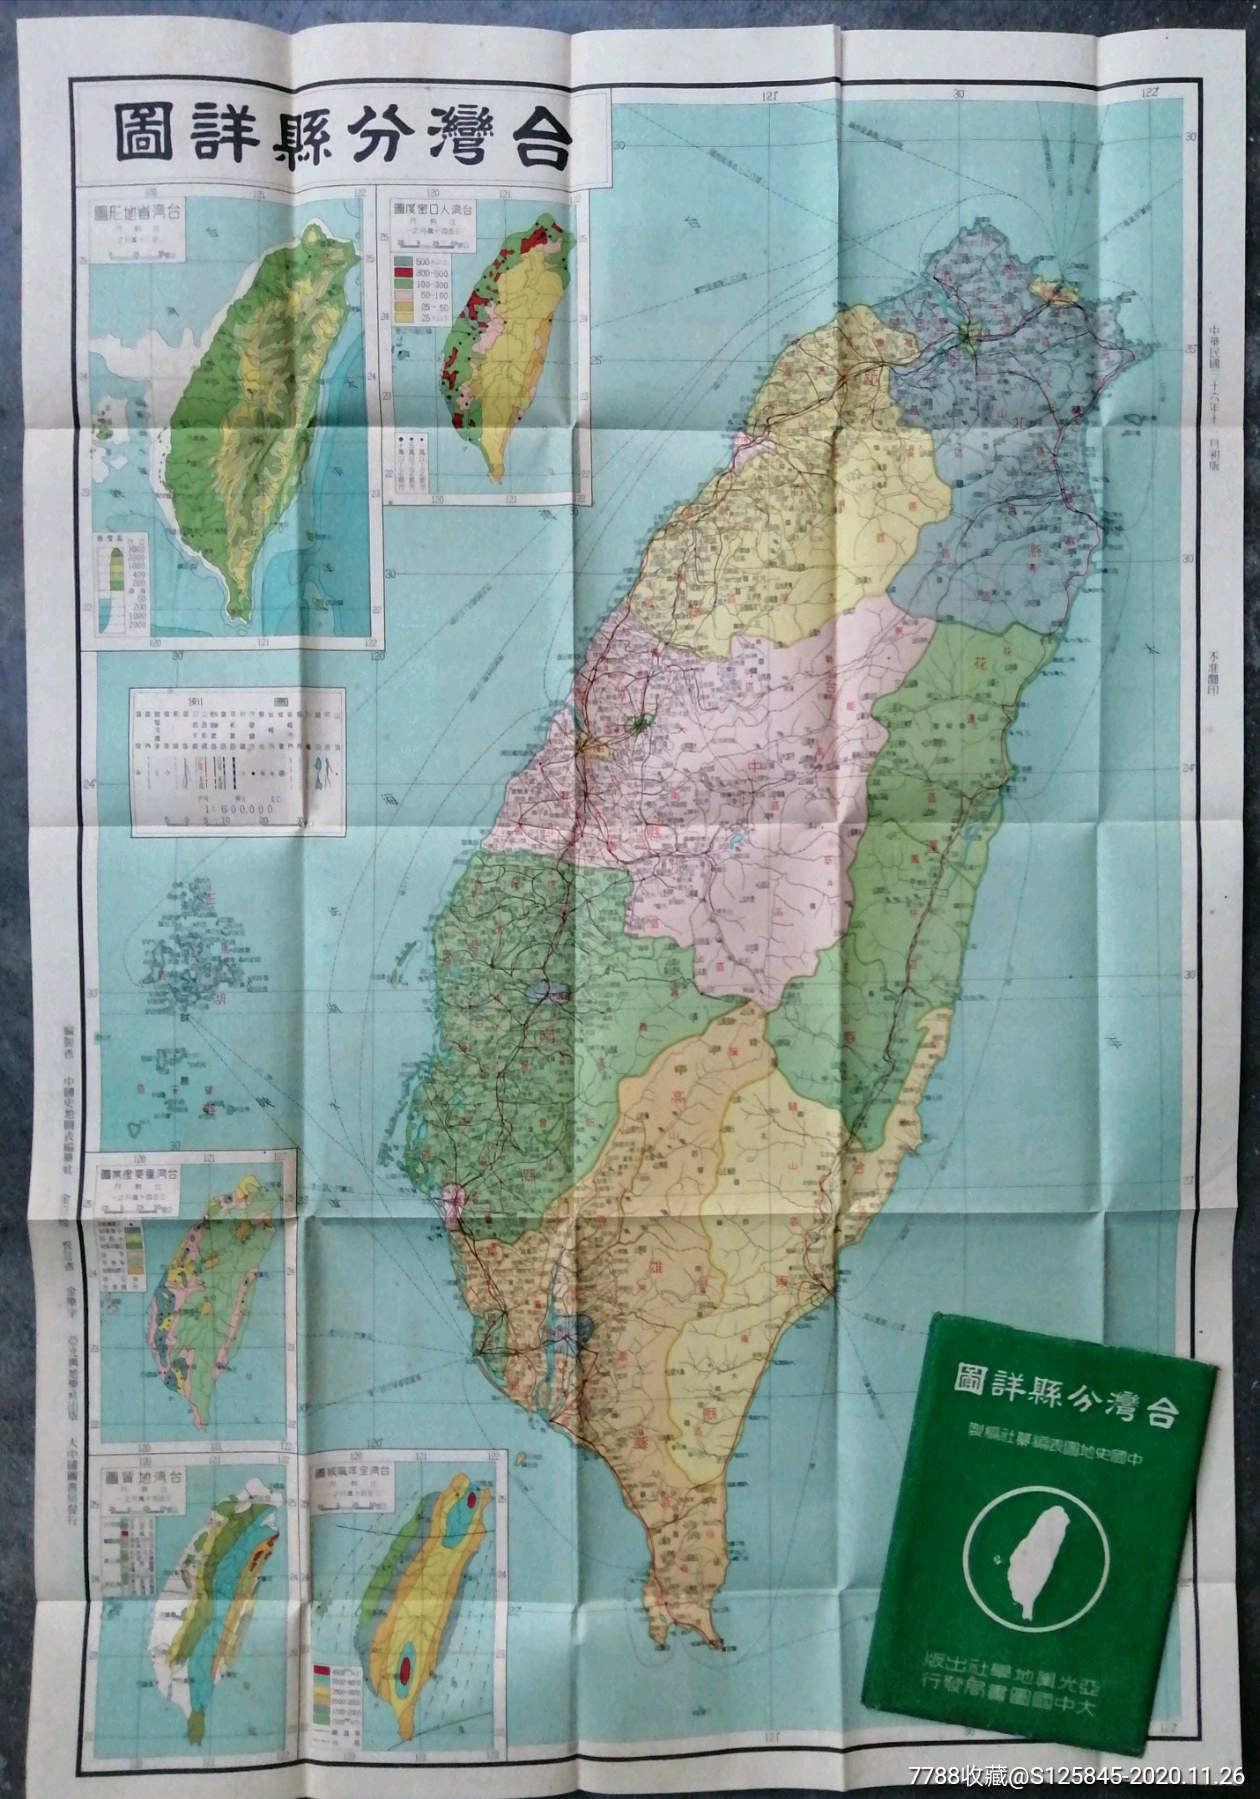 民国地图:《台湾分县详图》,抗战胜利后出版,品好难得